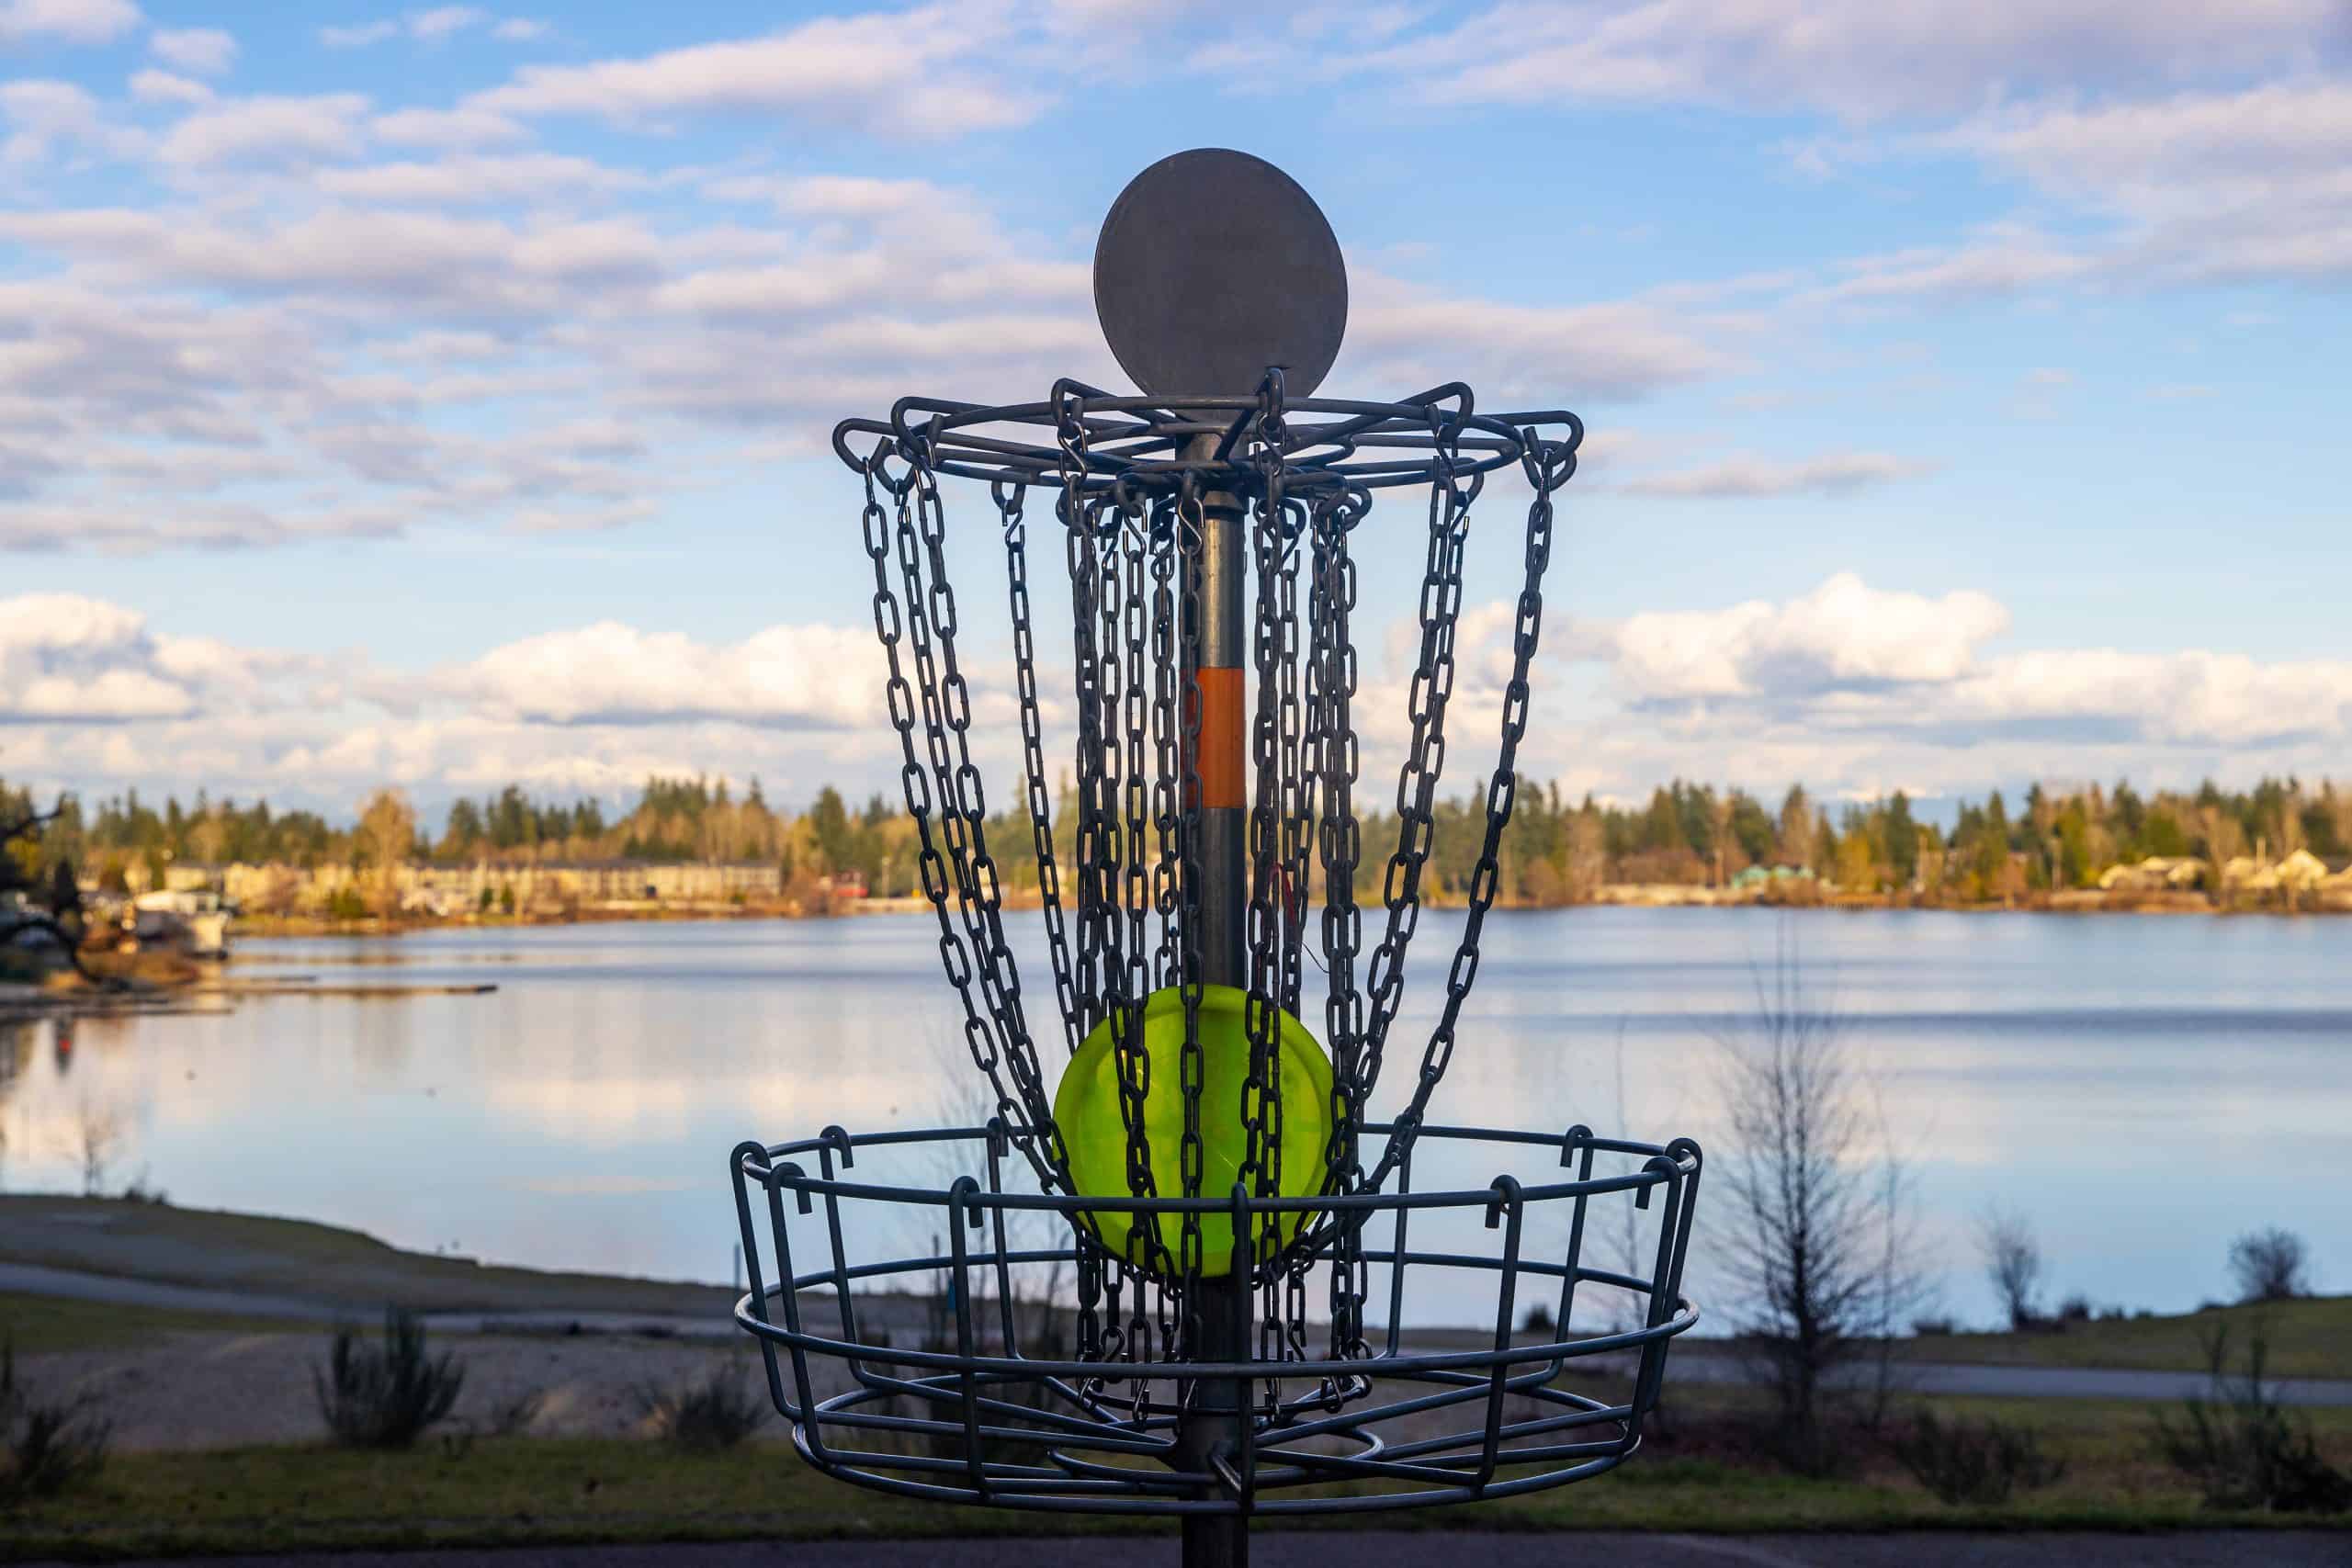 bien-choisir-son-frisbee-panier-de-disc-golf-devant-un-lac-boutique-frisbee-ultimate